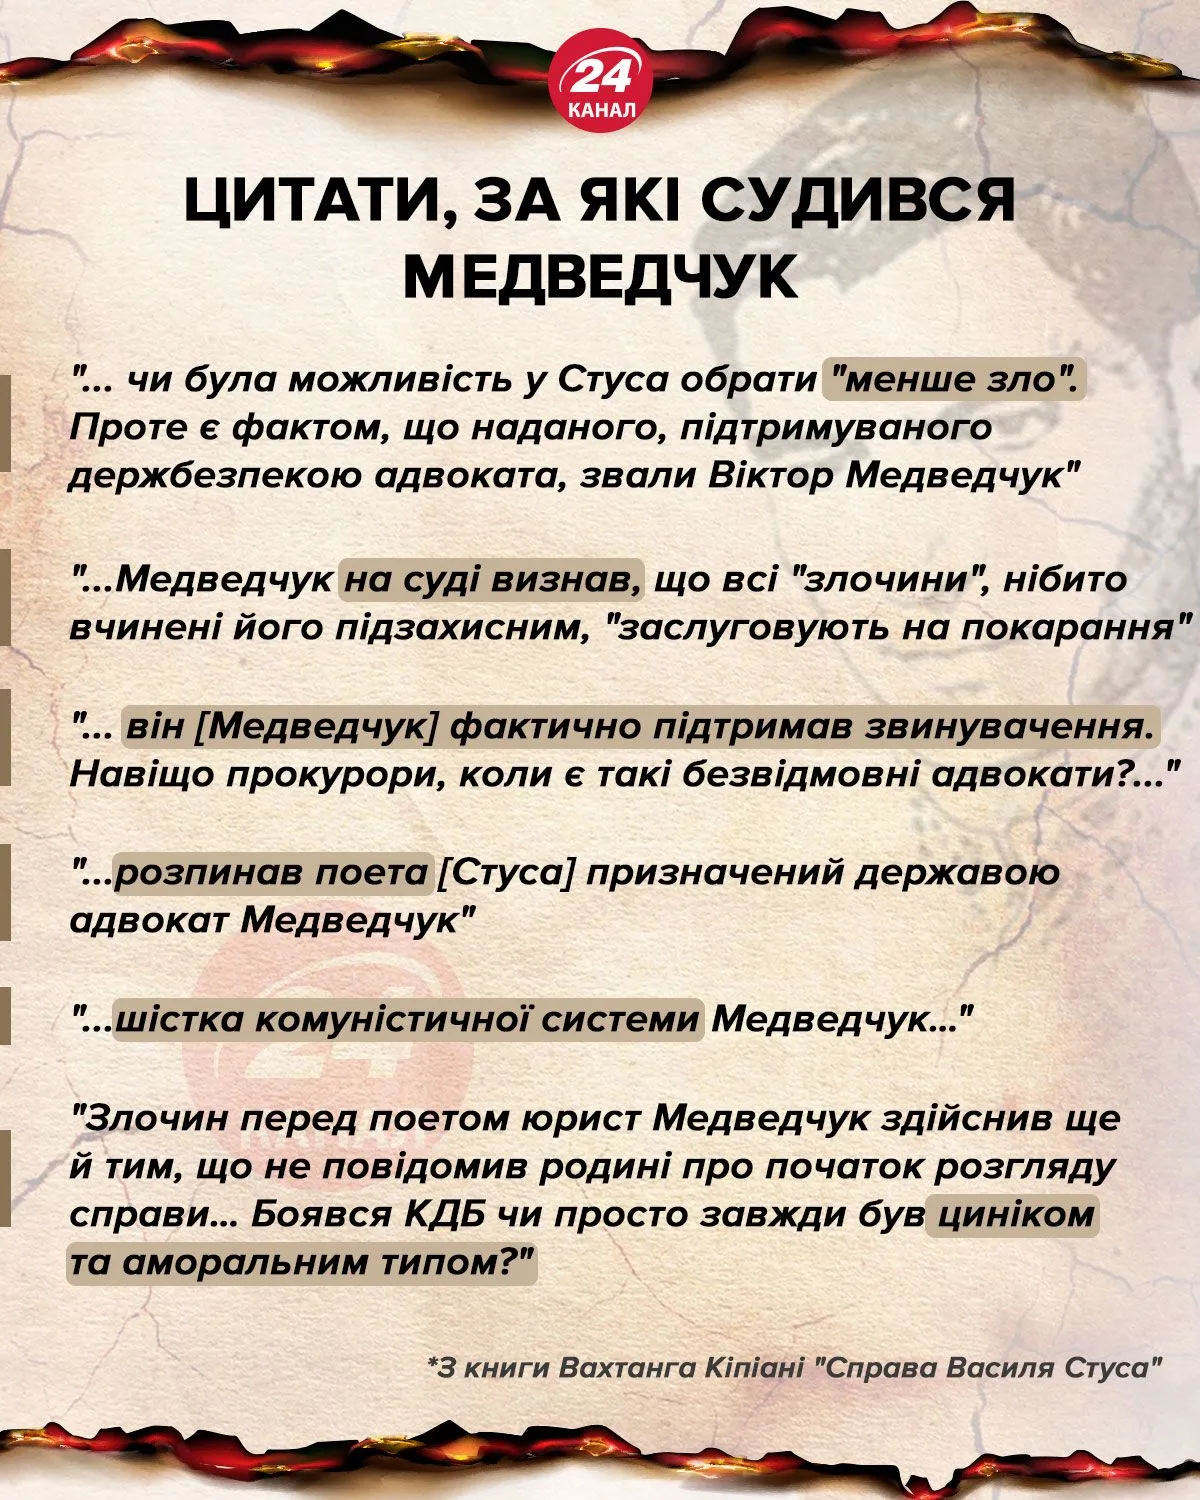 Цитаты, за которые судился Медведчук инфографика 24 канал